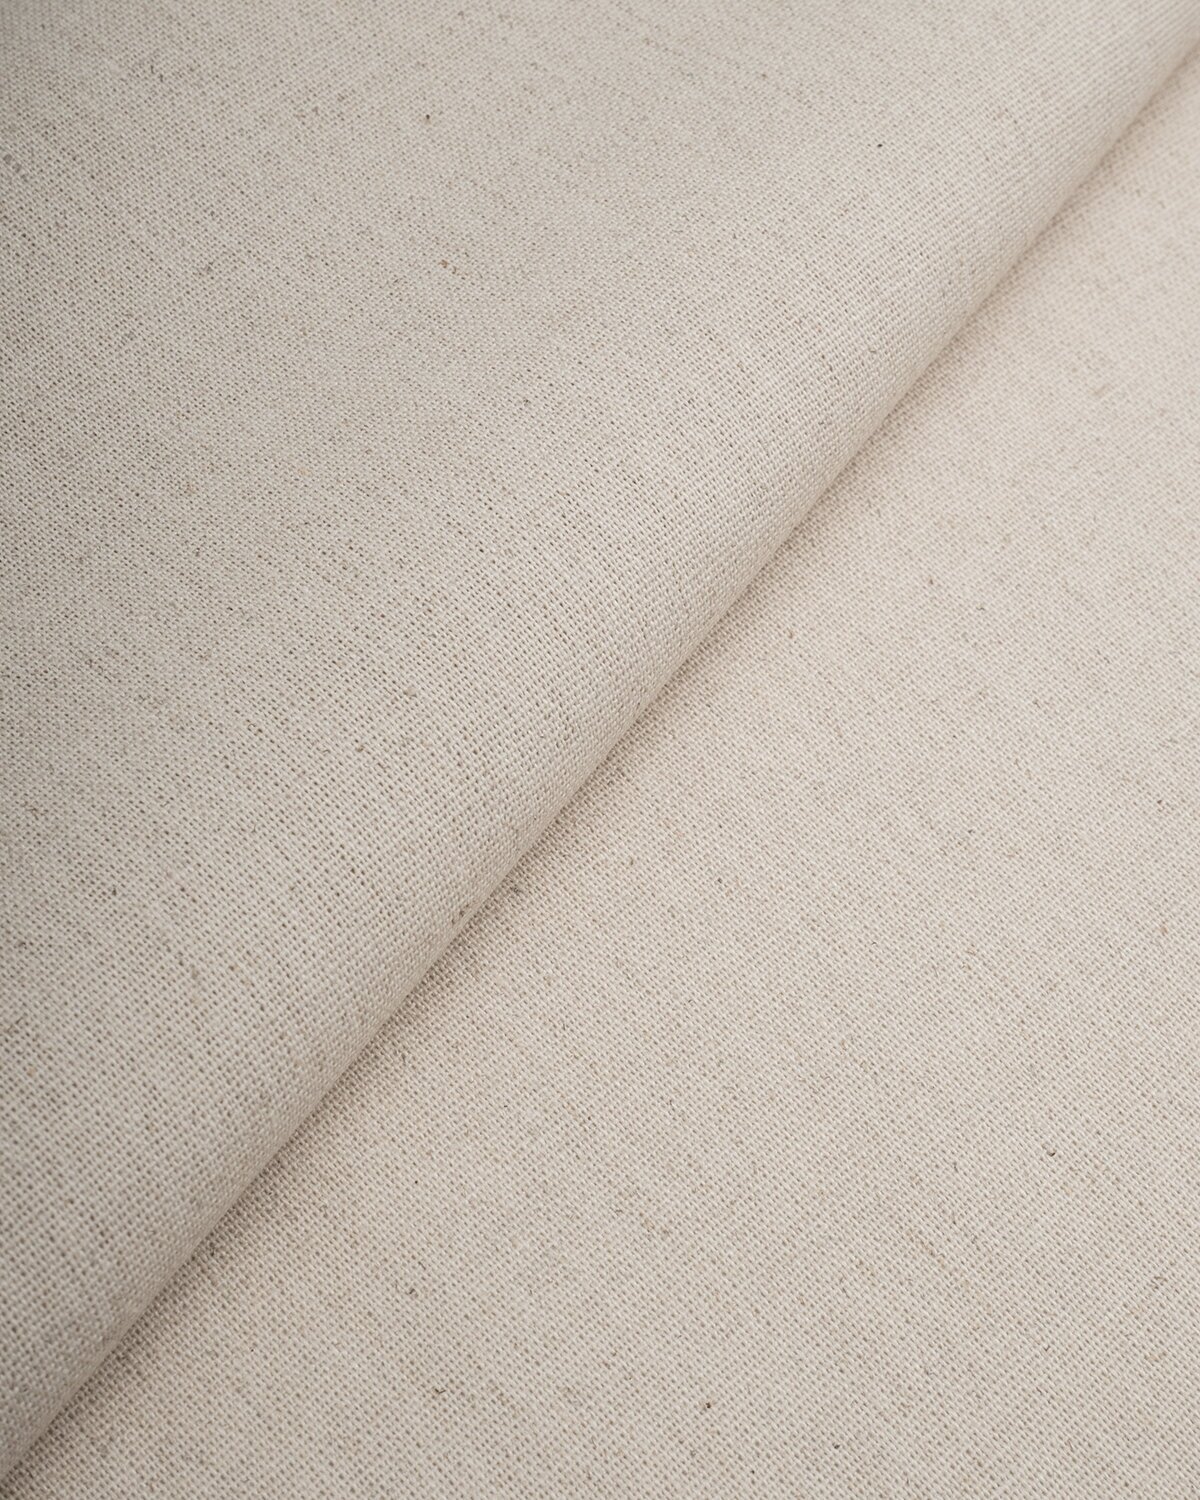 Ткань для шитья и рукоделия Лен "Блури" 1 м * 137 см, бежевый 054